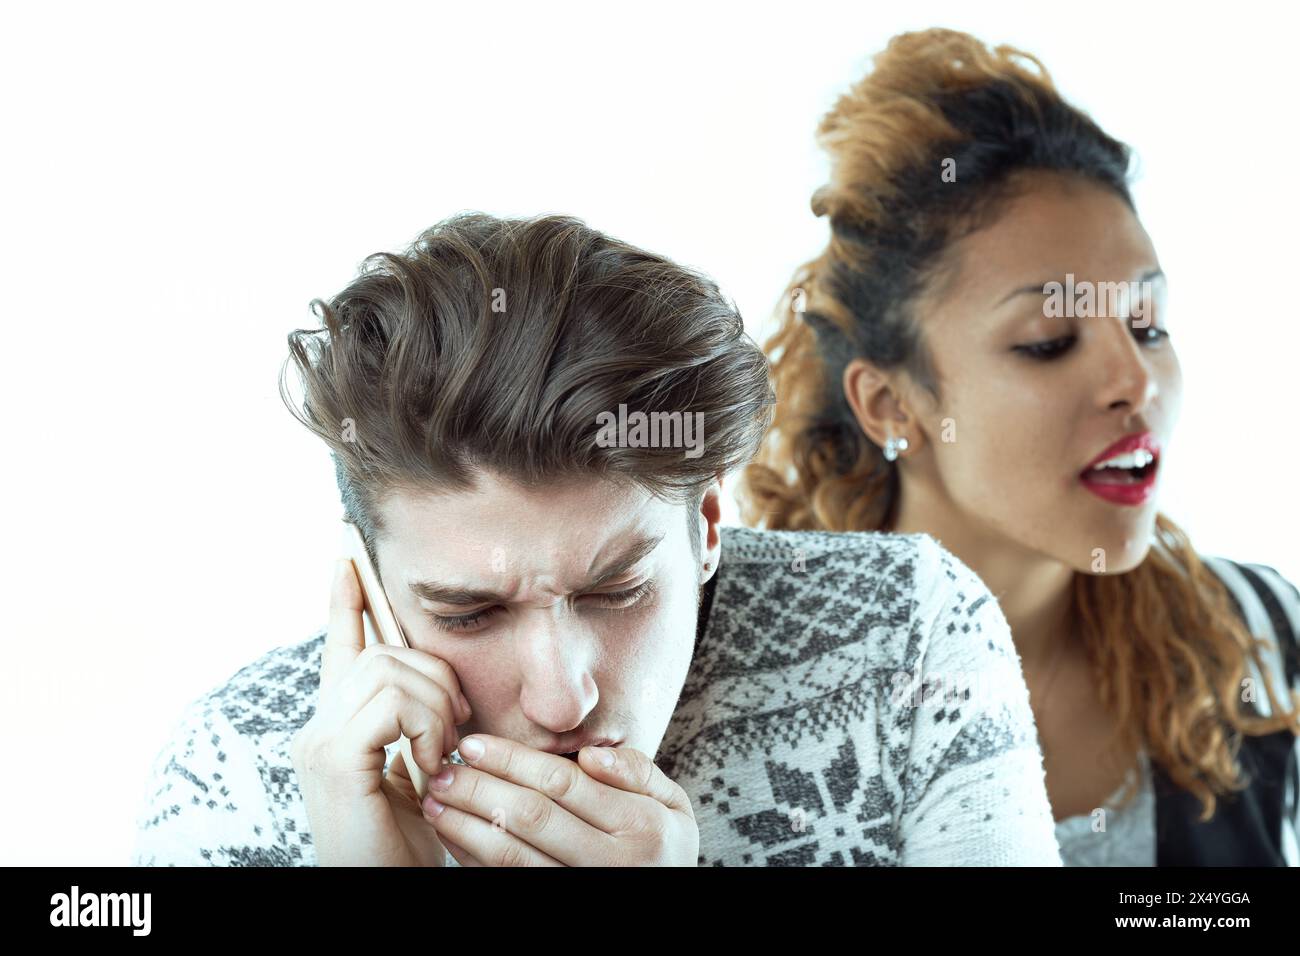 L'uomo lotta visibilmente per mantenere la privacy durante una chiamata mentre una donna dietro di lui ascolta attivamente, trascurando il suo disagio Foto Stock